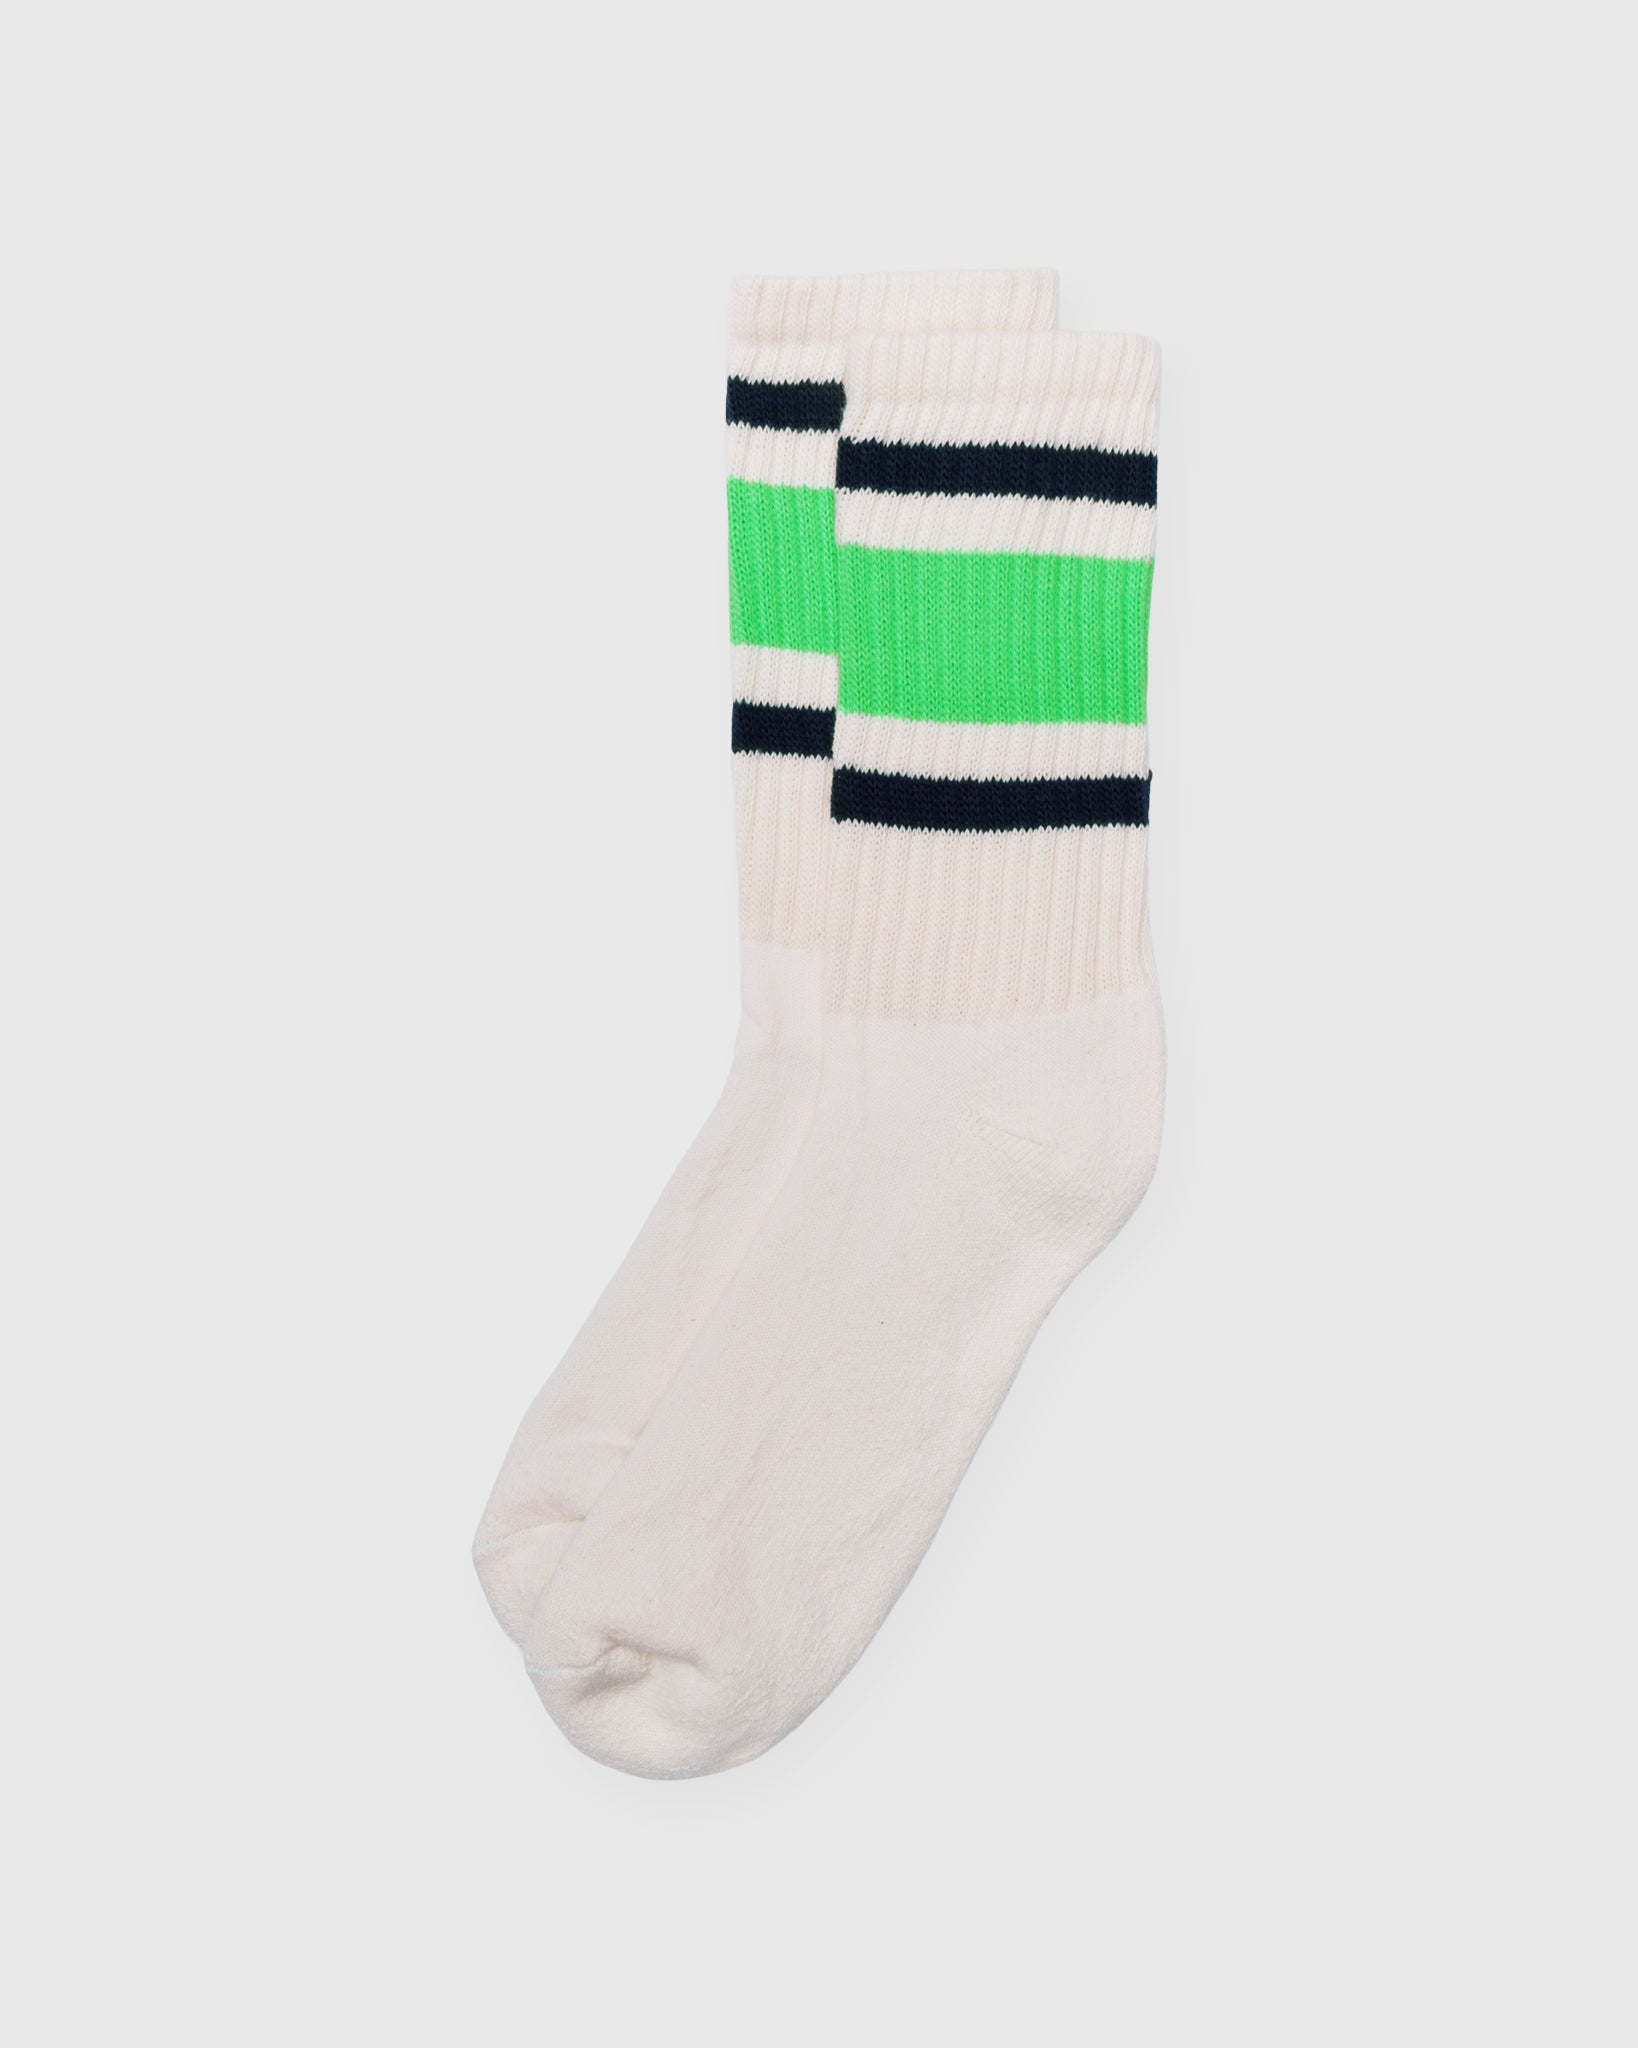 Retro Stripe Socks in Neon Green/Navy